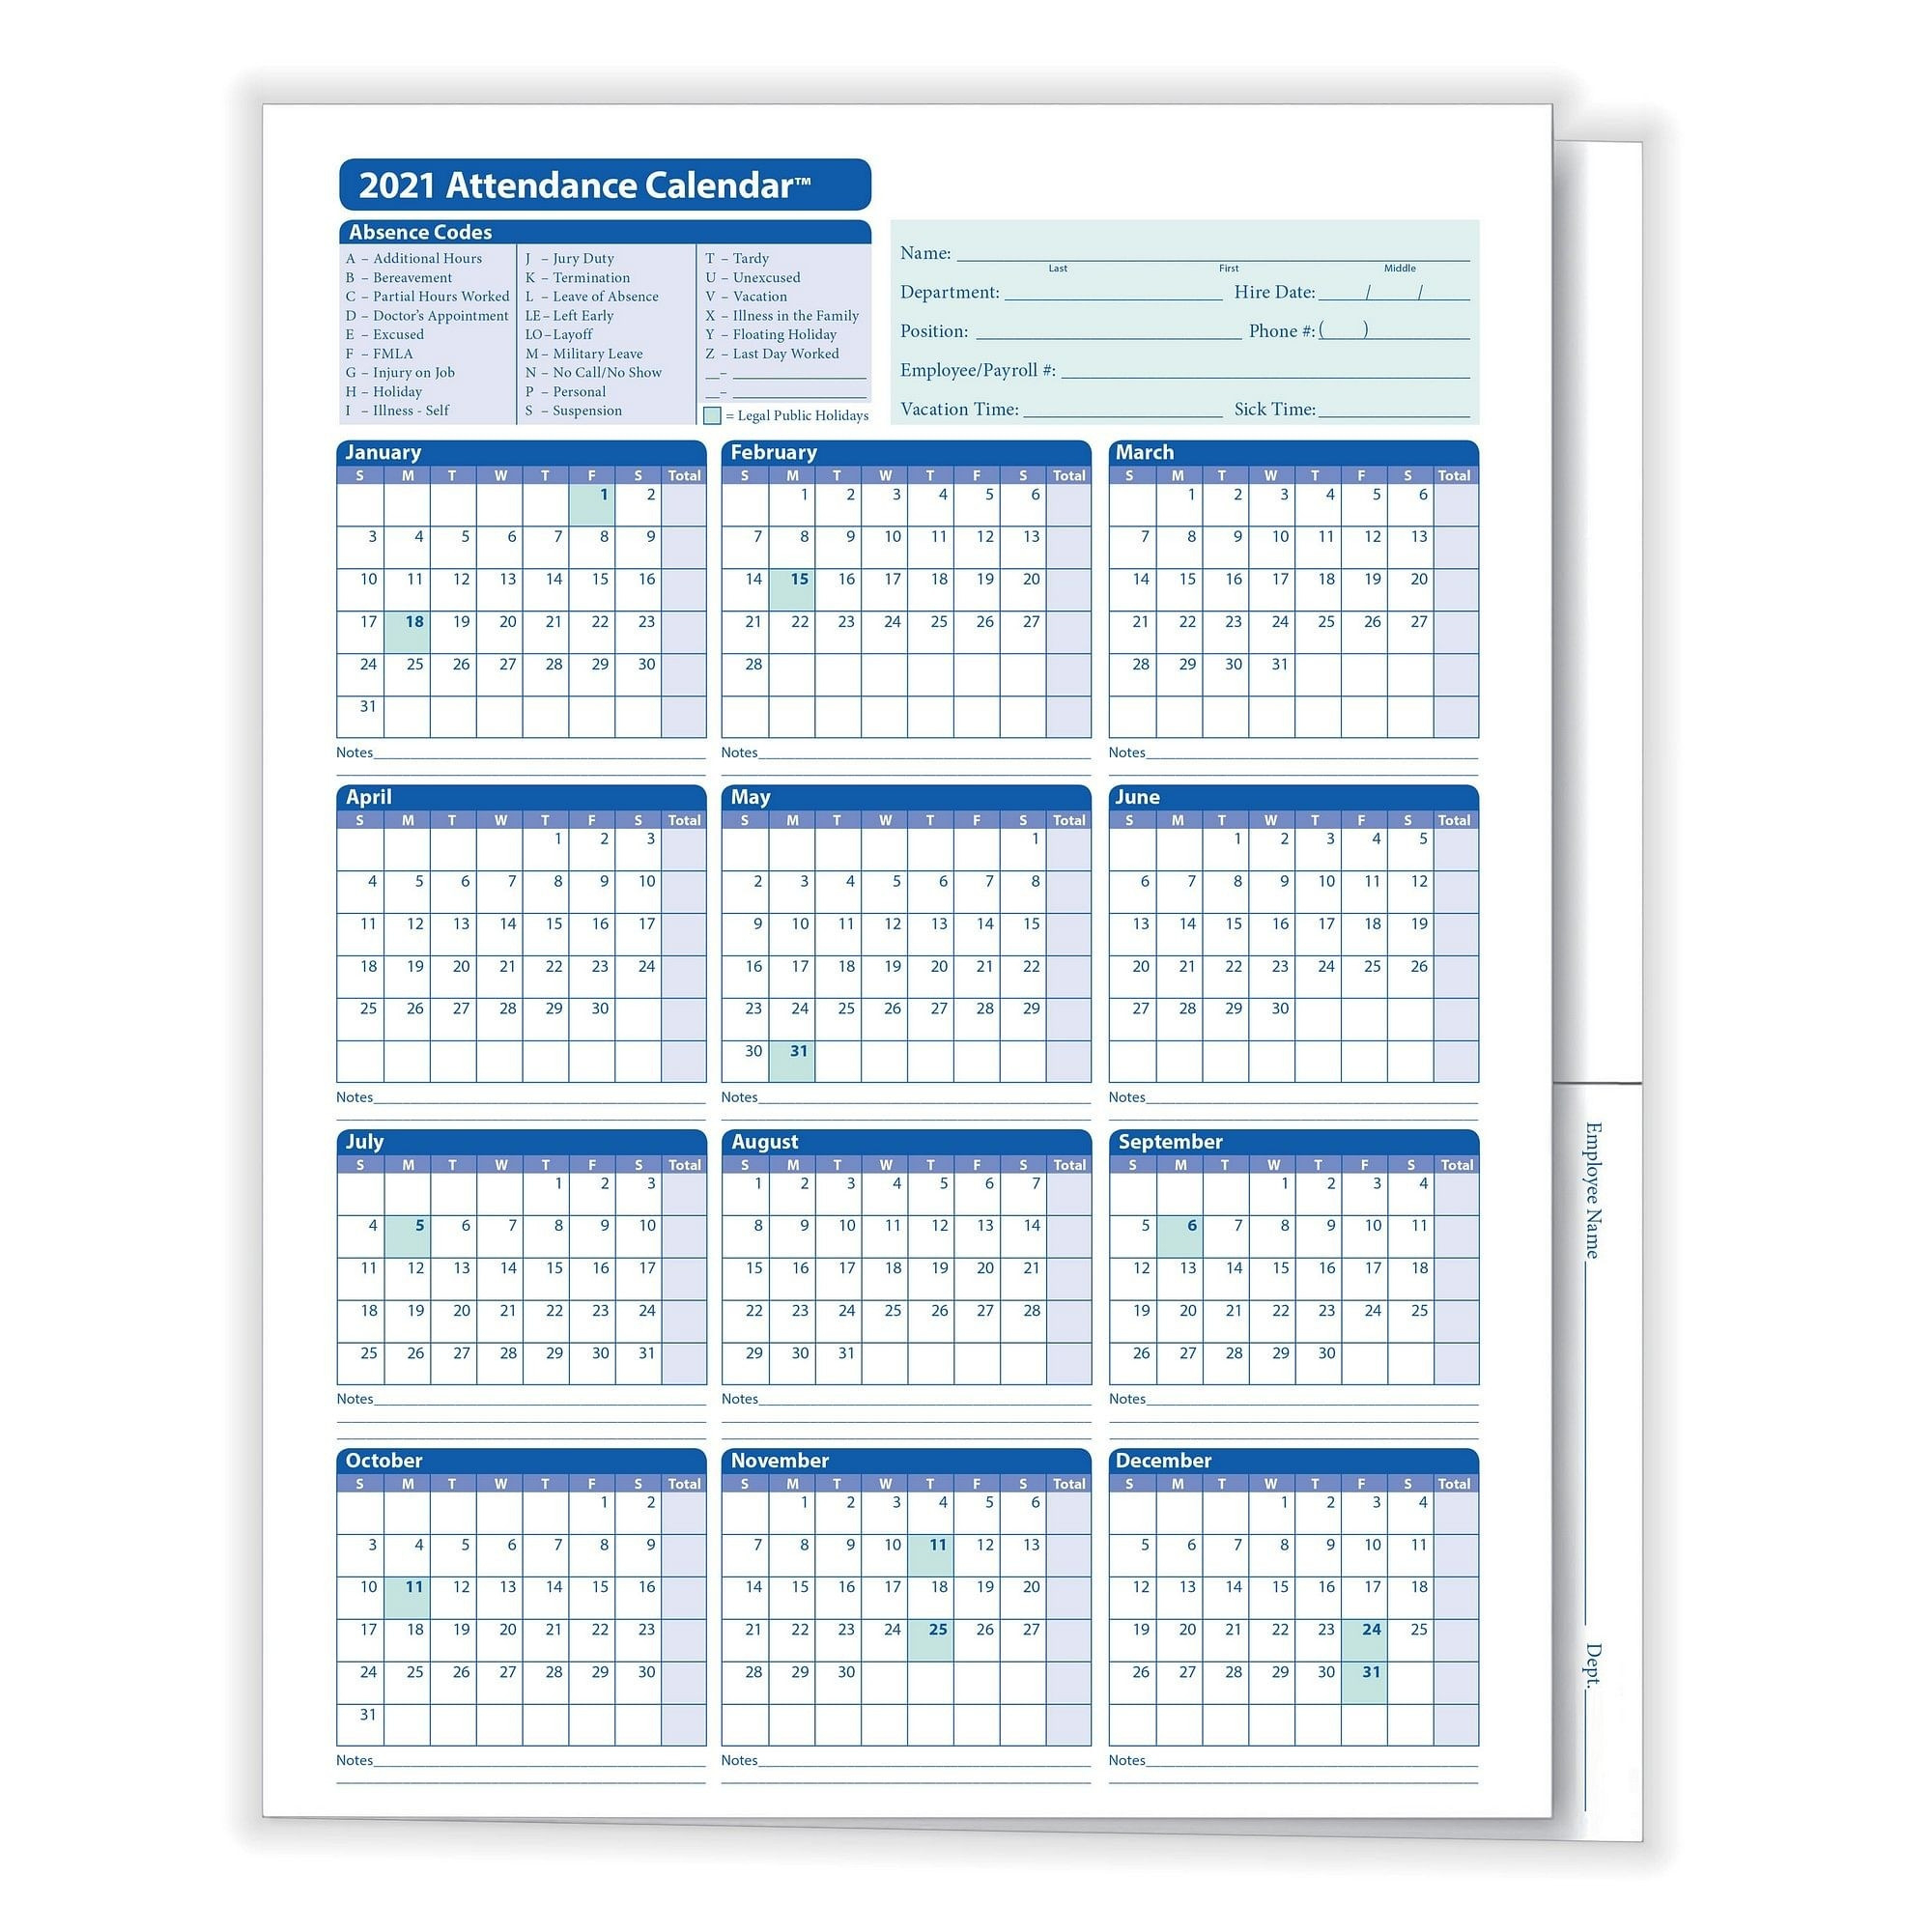 2021 Attendance Calendar - Template Calendar Design-2021 Employee Attendance Calendar Free